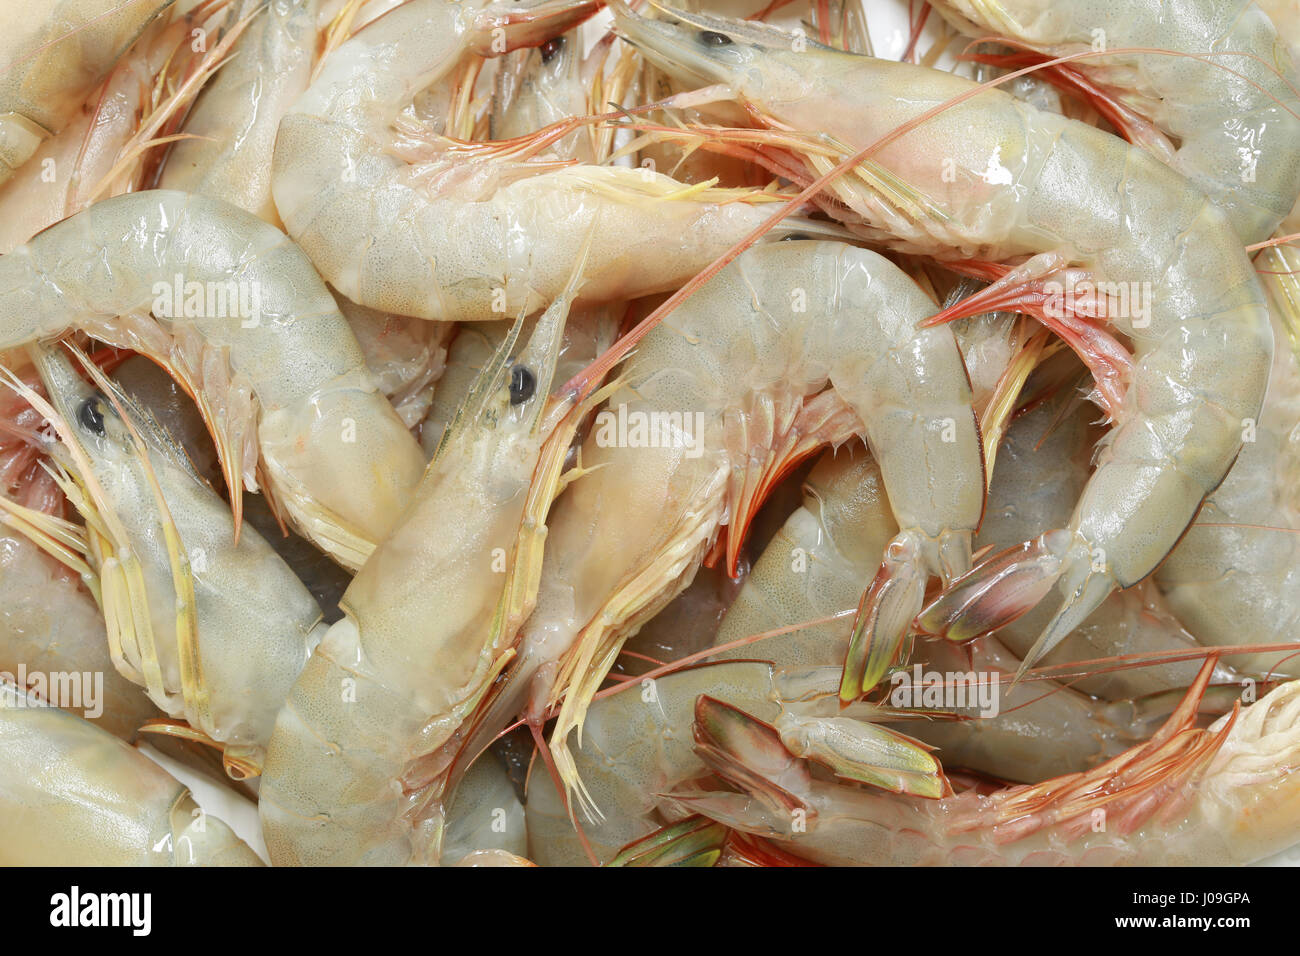 Camarón fresco del mar tropical en Tailandia,economía pesquería comercial de animales acuáticos. Foto de stock